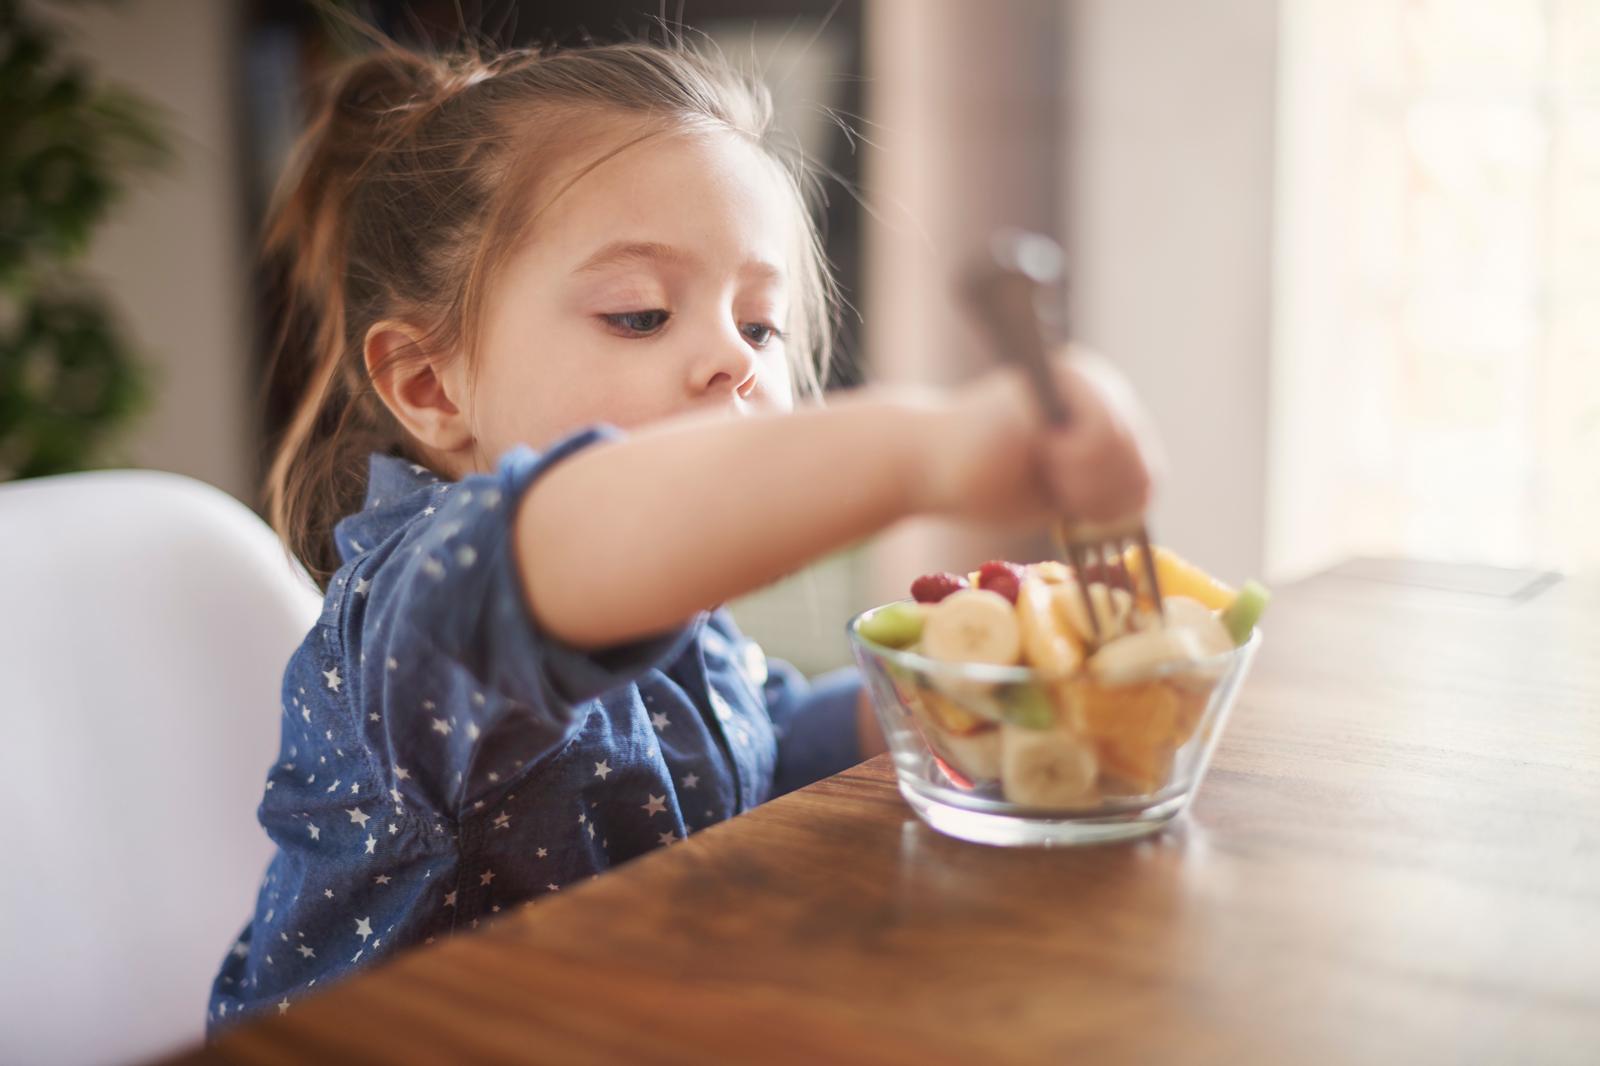 Annelerin çocukların beslenmesinde yaptığı 5 hata